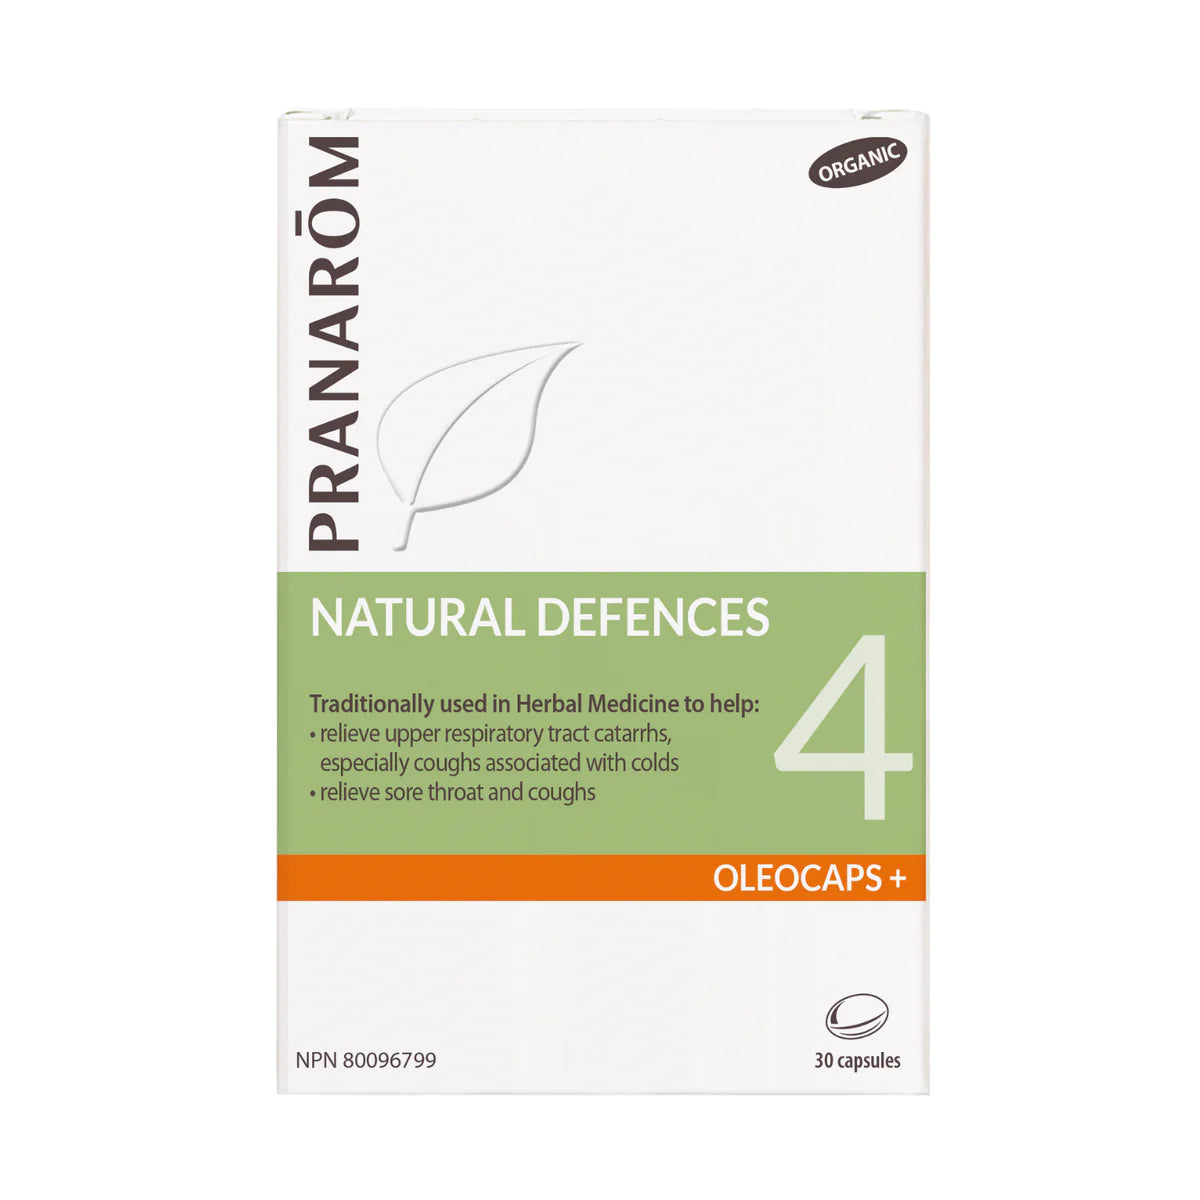 NATURAL DEFENCES OLEOCAPS+ 4,  essential oils 30 caps, Organic*